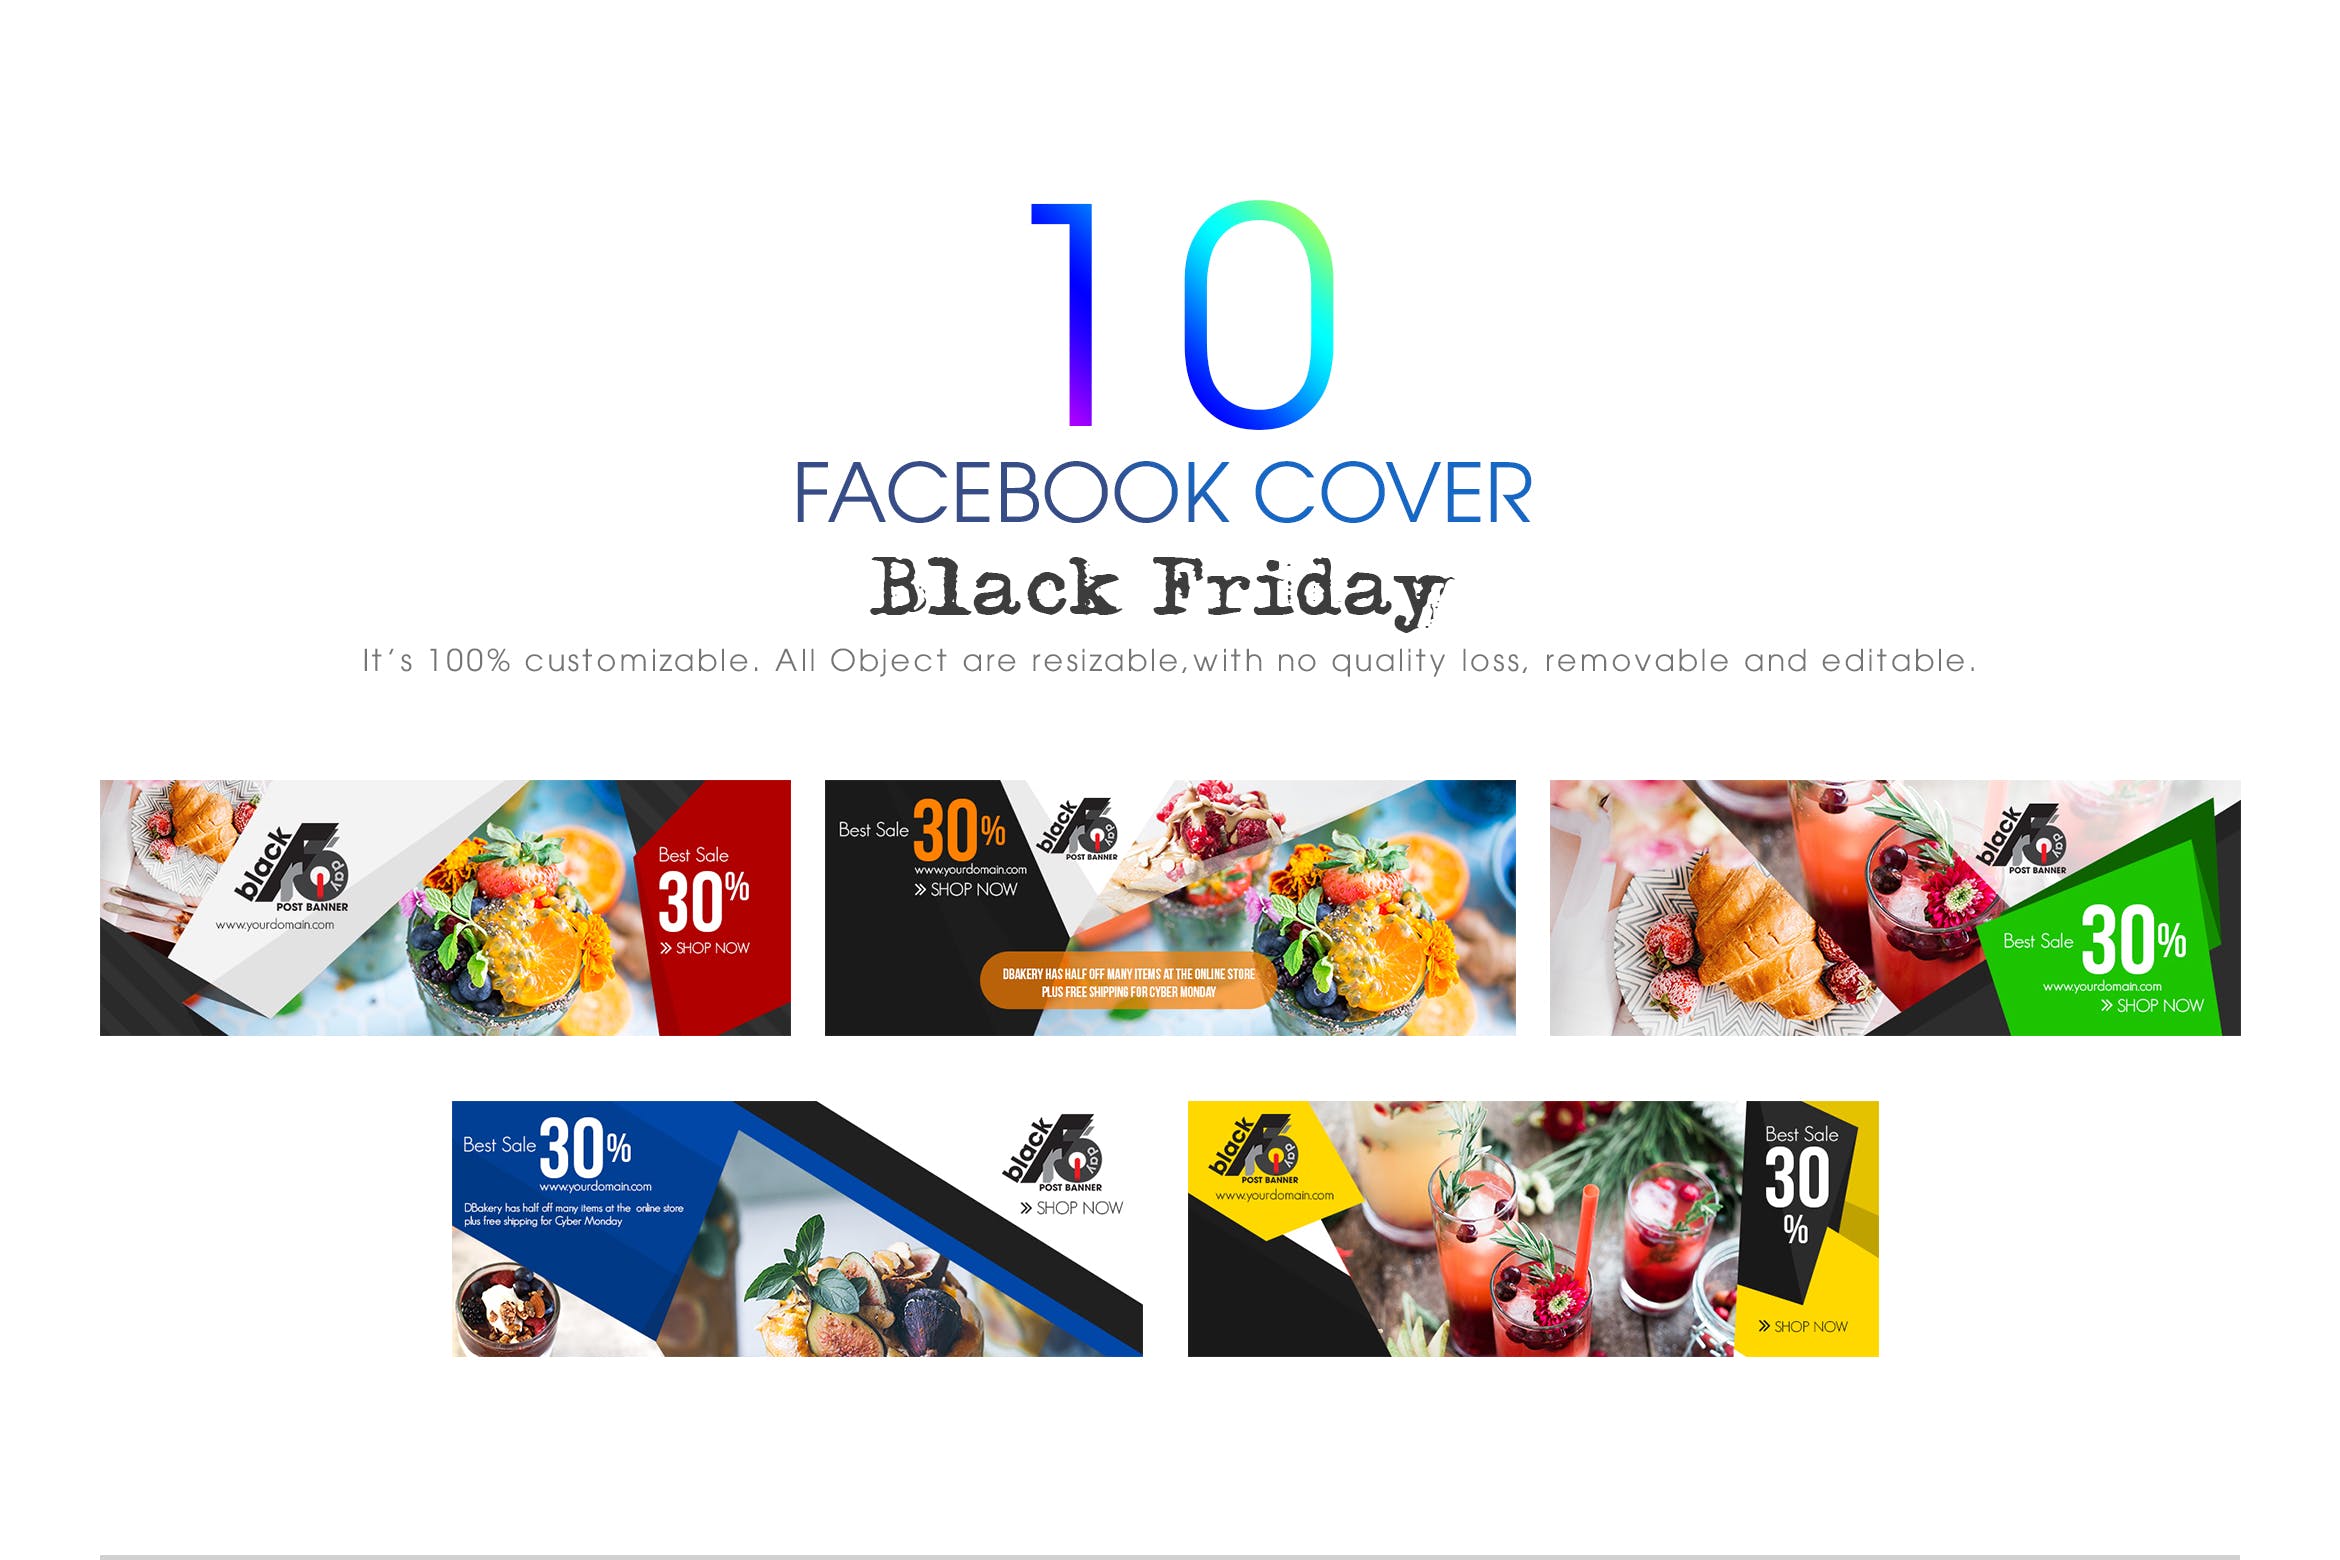 10款Facebook社交平台黒五购物广告Banner设计模板16图库精选 10 Facebook Cover-Black Friday插图